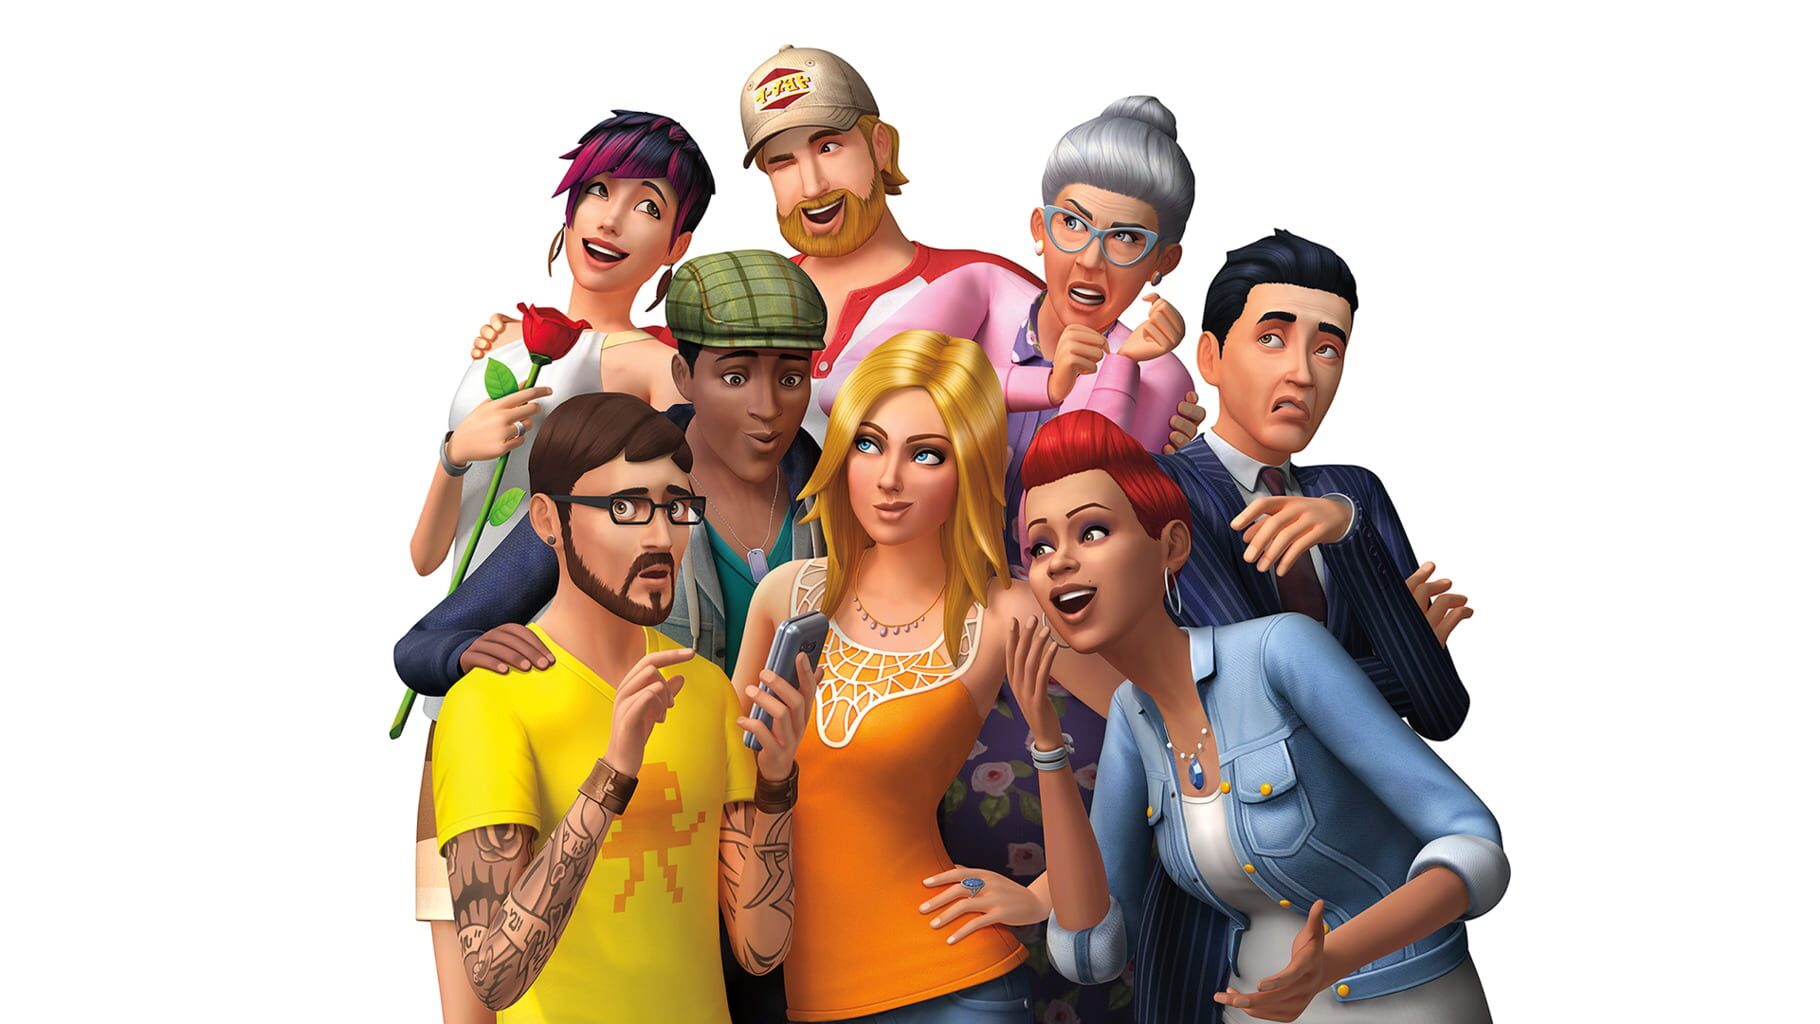 Arte - The Sims 4